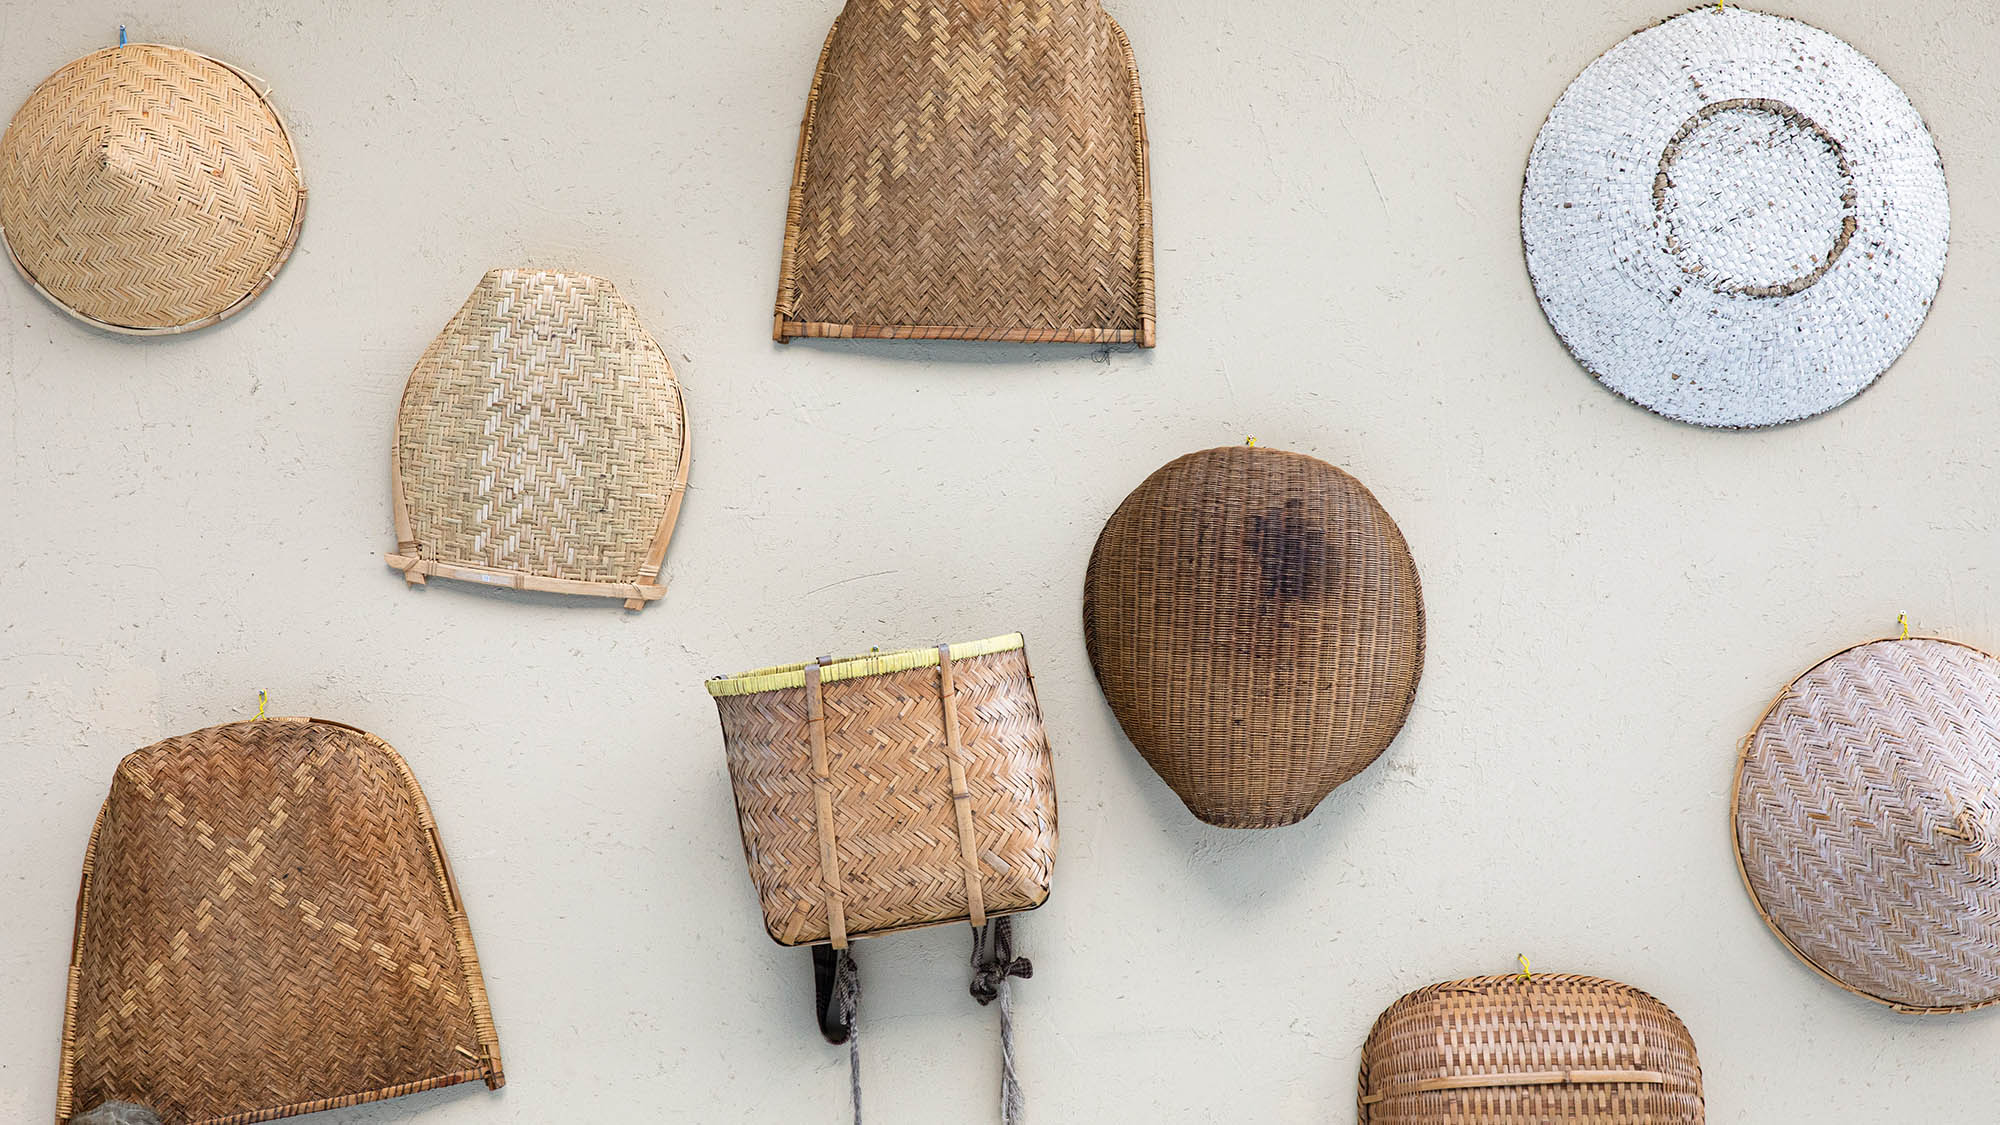 ・【日本の古道具】竹籠や箕（み）など暮らしを支えた古道具を見ることができます